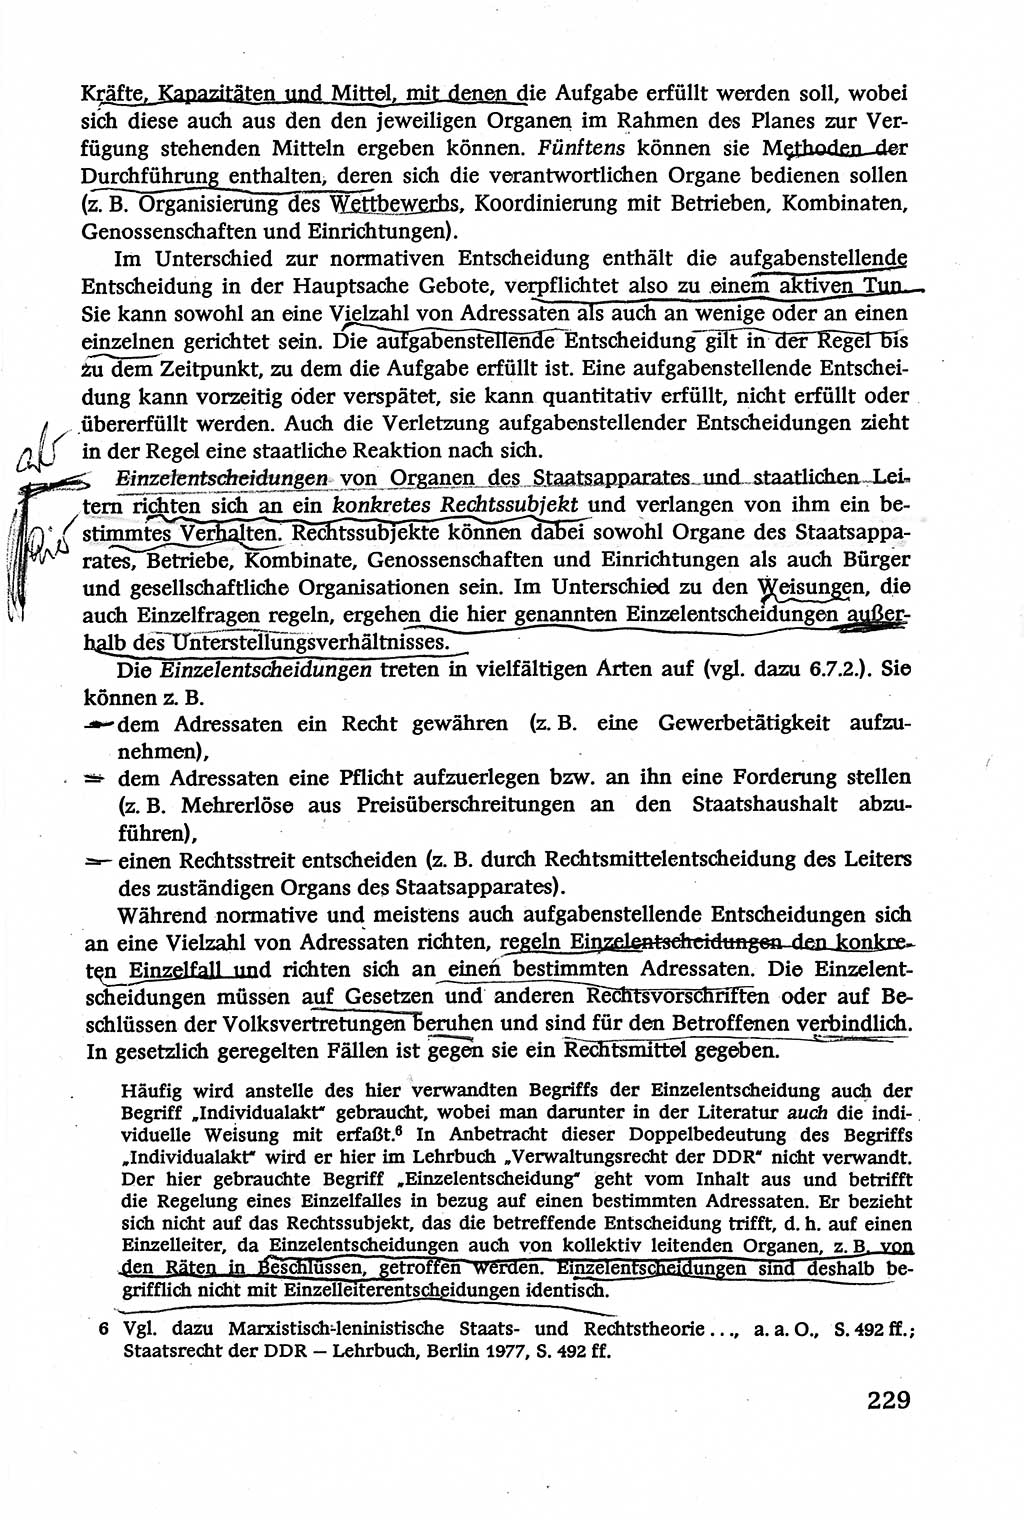 Verwaltungsrecht [Deutsche Demokratische Republik (DDR)], Lehrbuch 1979, Seite 229 (Verw.-R. DDR Lb. 1979, S. 229)